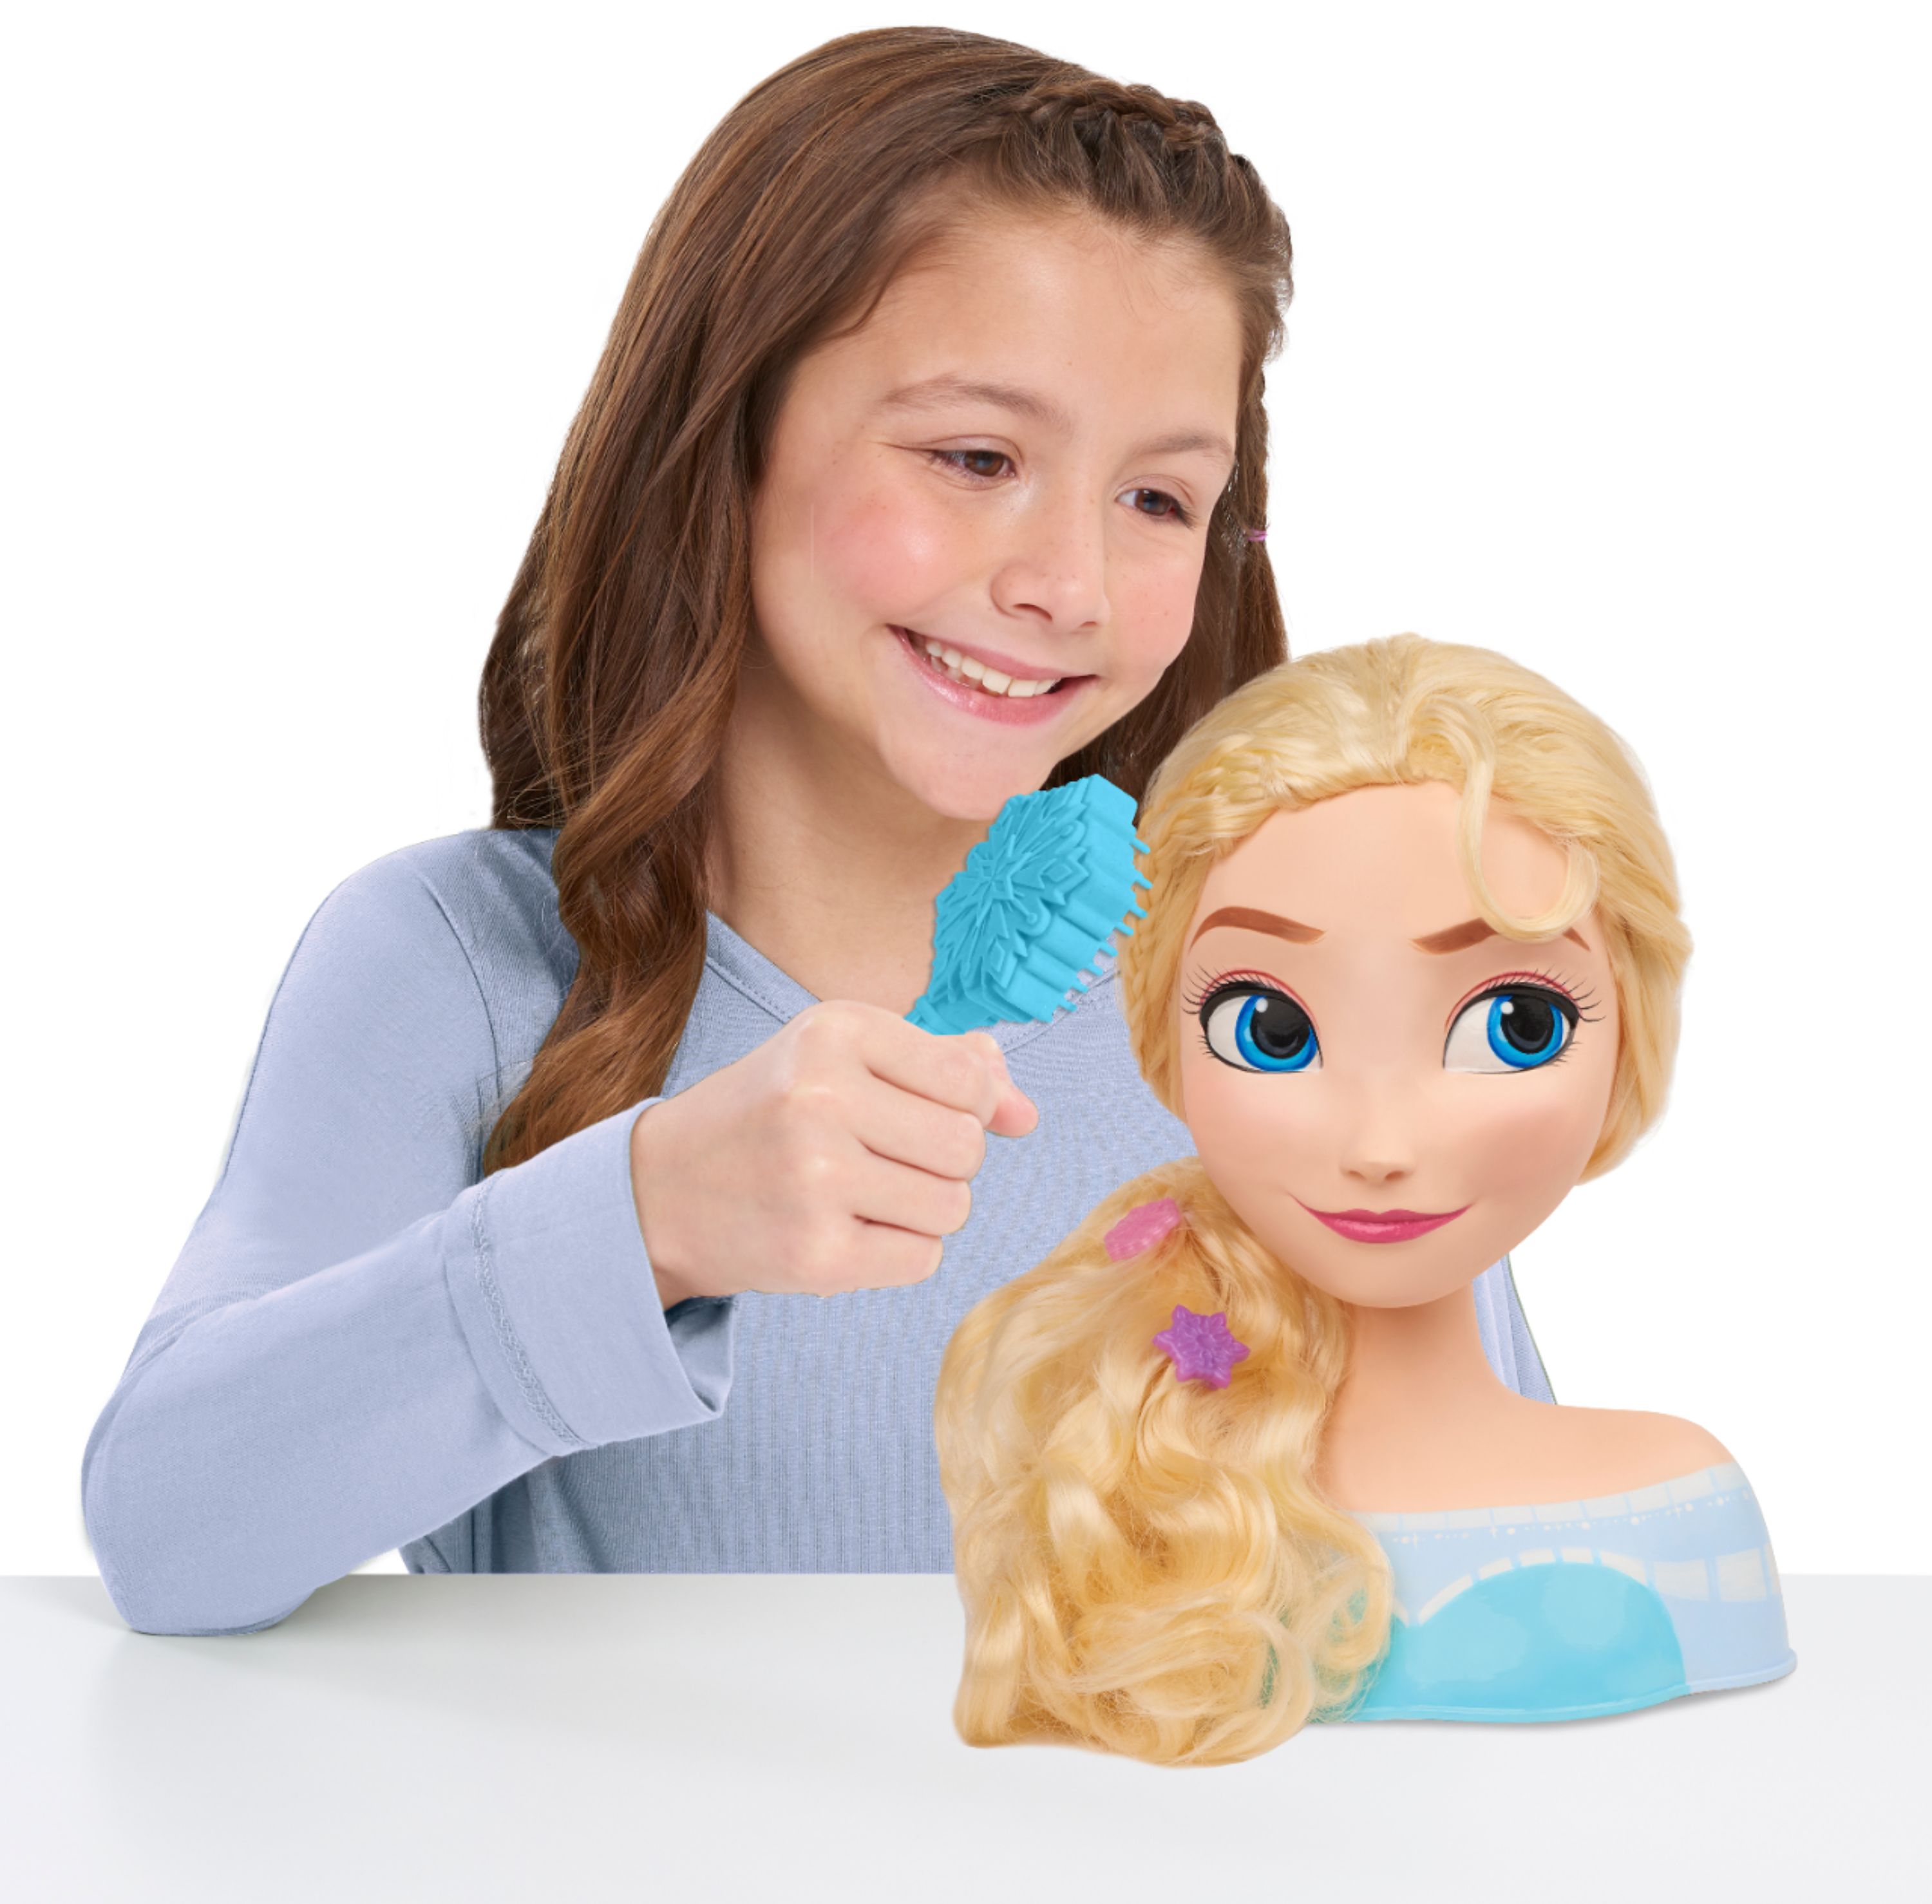 Disney Frozen Elsa styling head, Five Below